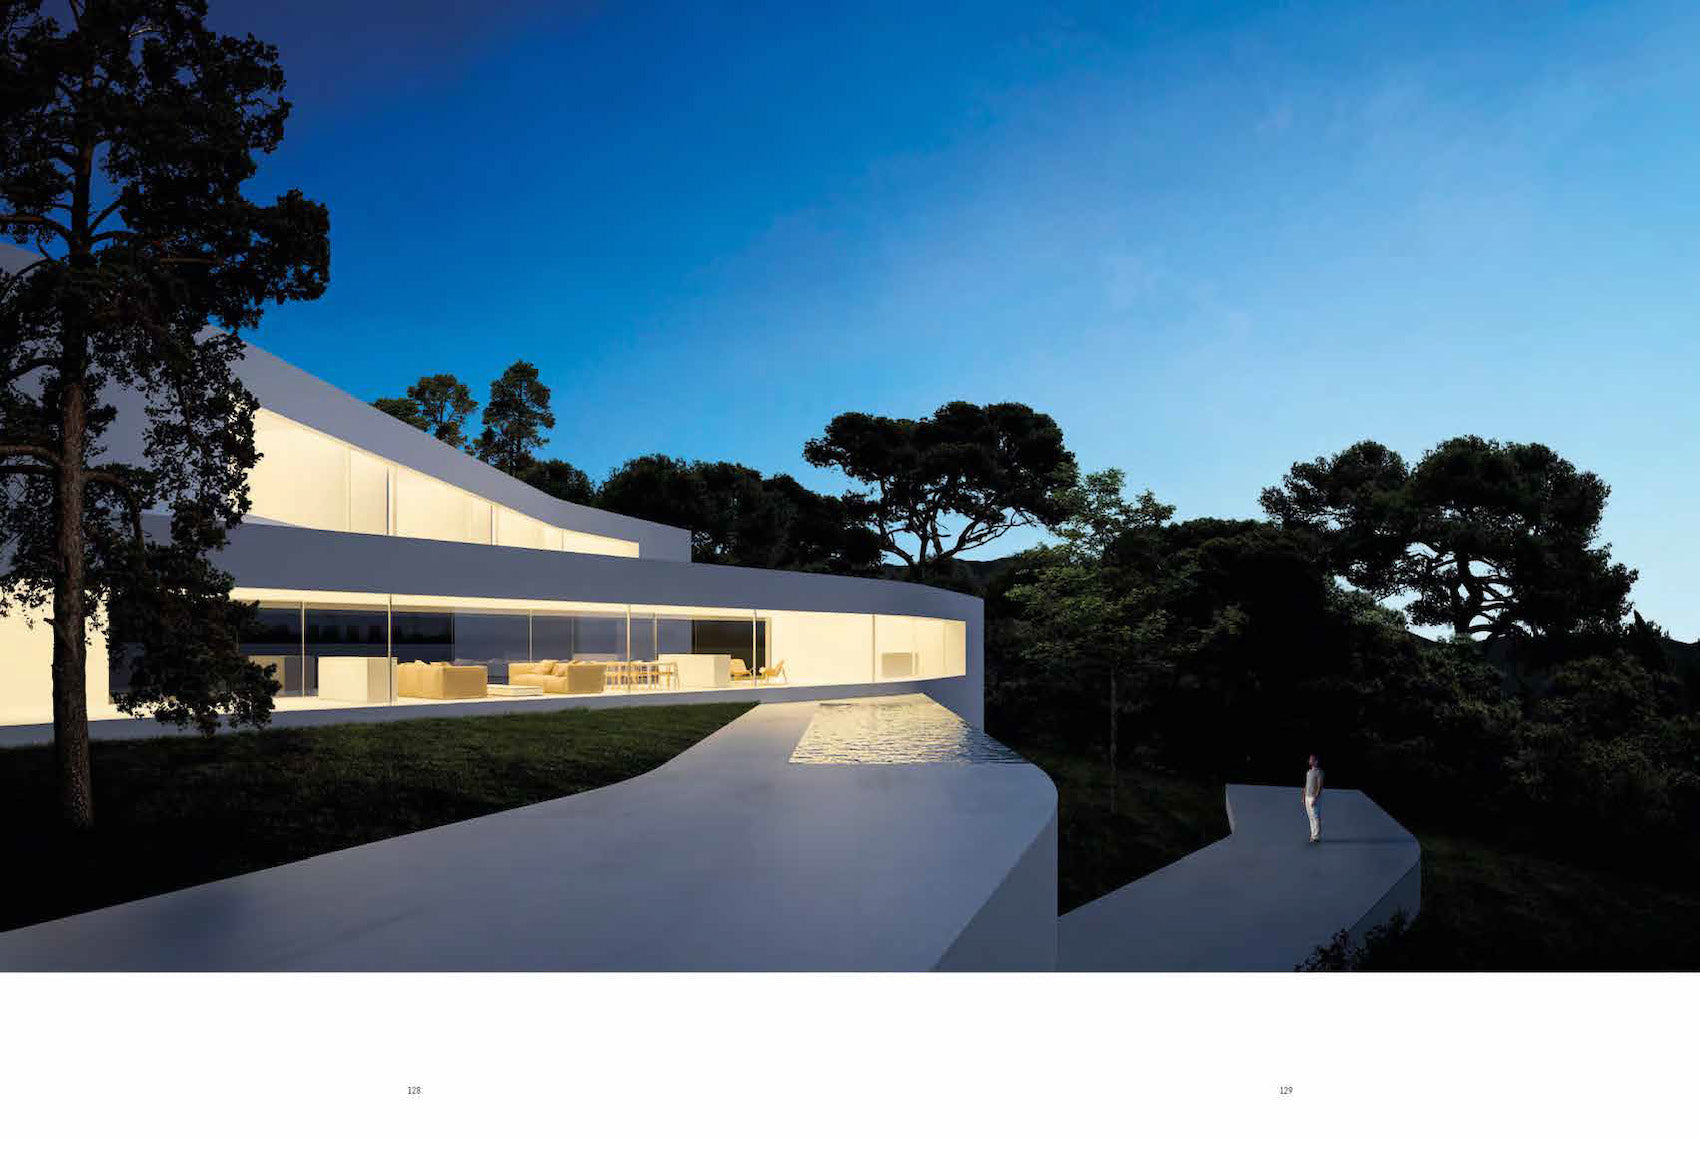 Fran Silvestre Architects